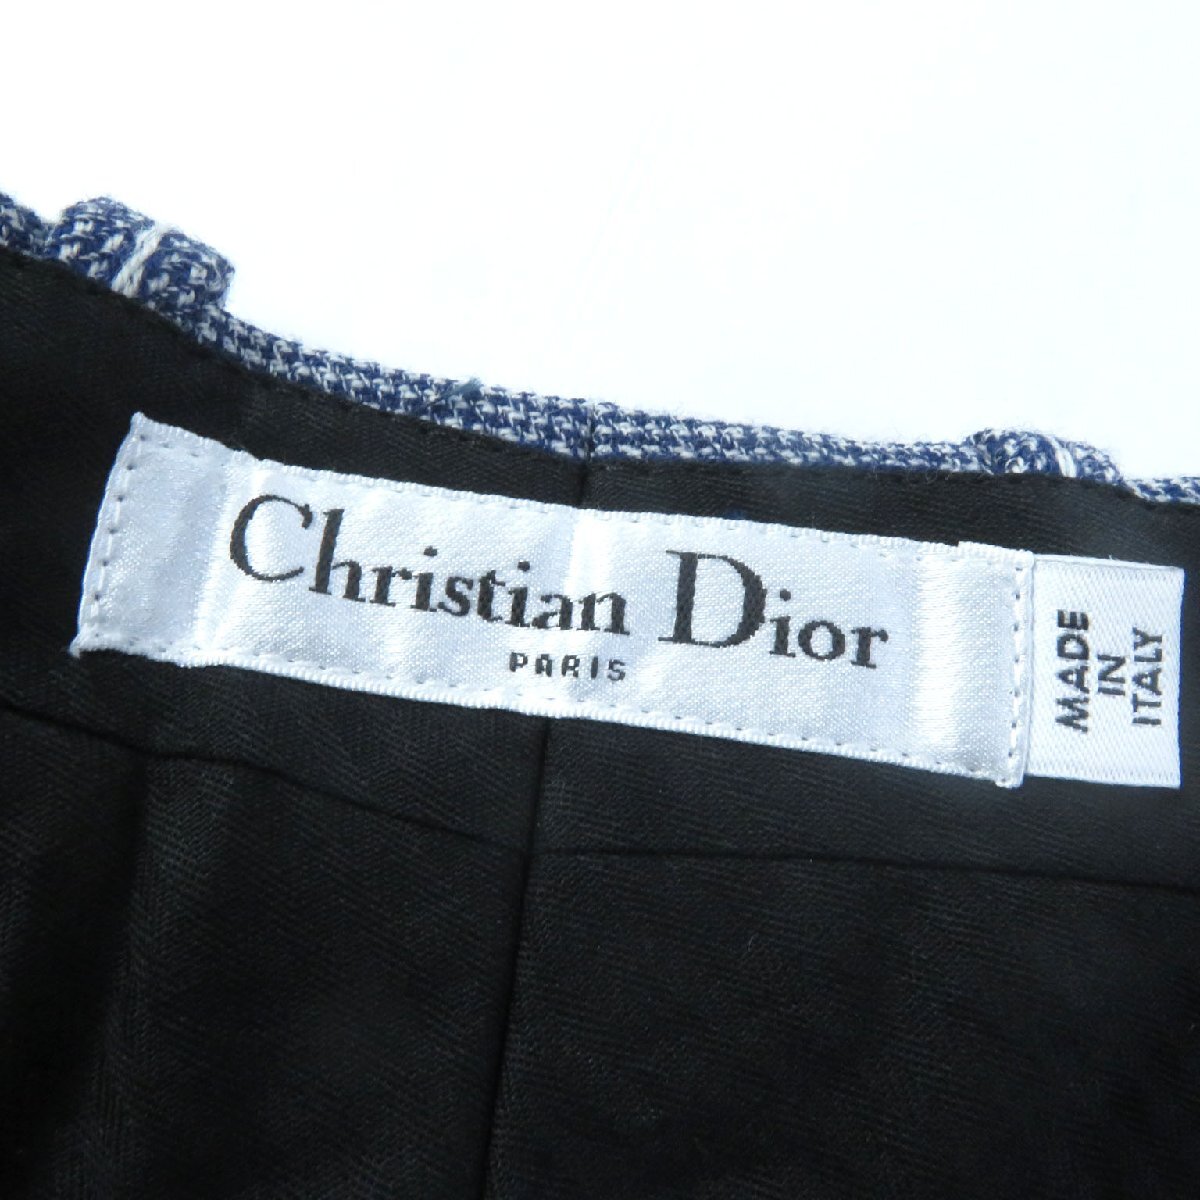  превосходный товар Christian Dior 051P48A1237 подкладка шелк 100% полоса рисунок юбка-брюки / шорты темно-синий серый 42 сделано в Италии стандартный товар женский 